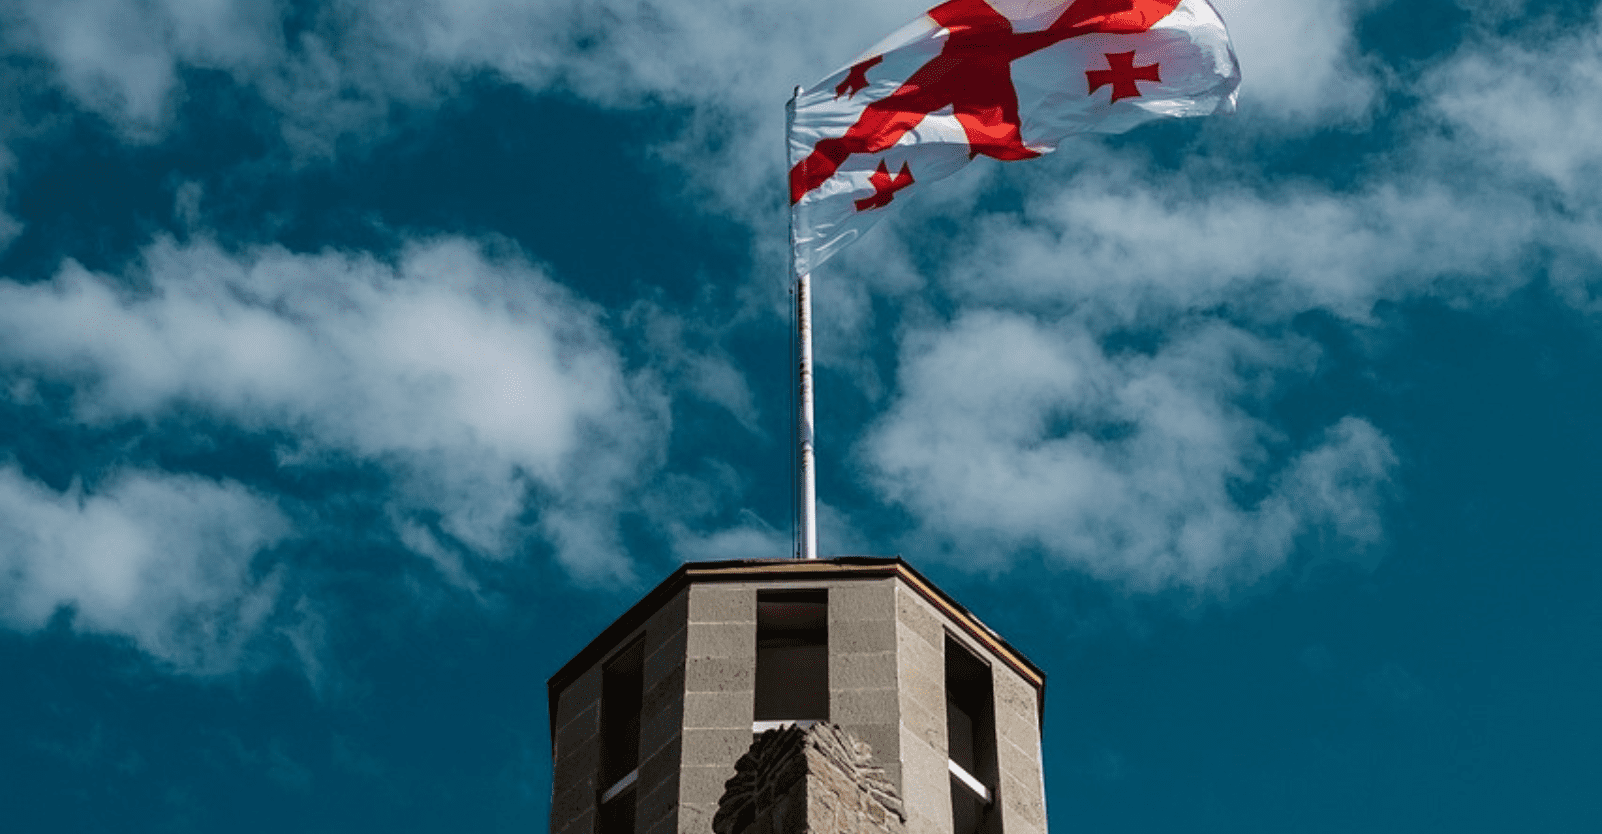 Niebieskie niebo z białymi chmurami. Na środku widnieje budowla z flagą Gruzji (biała flaga z czerwonym krzyżem i małymi czerwonymi krzyżami w każdym rogu).